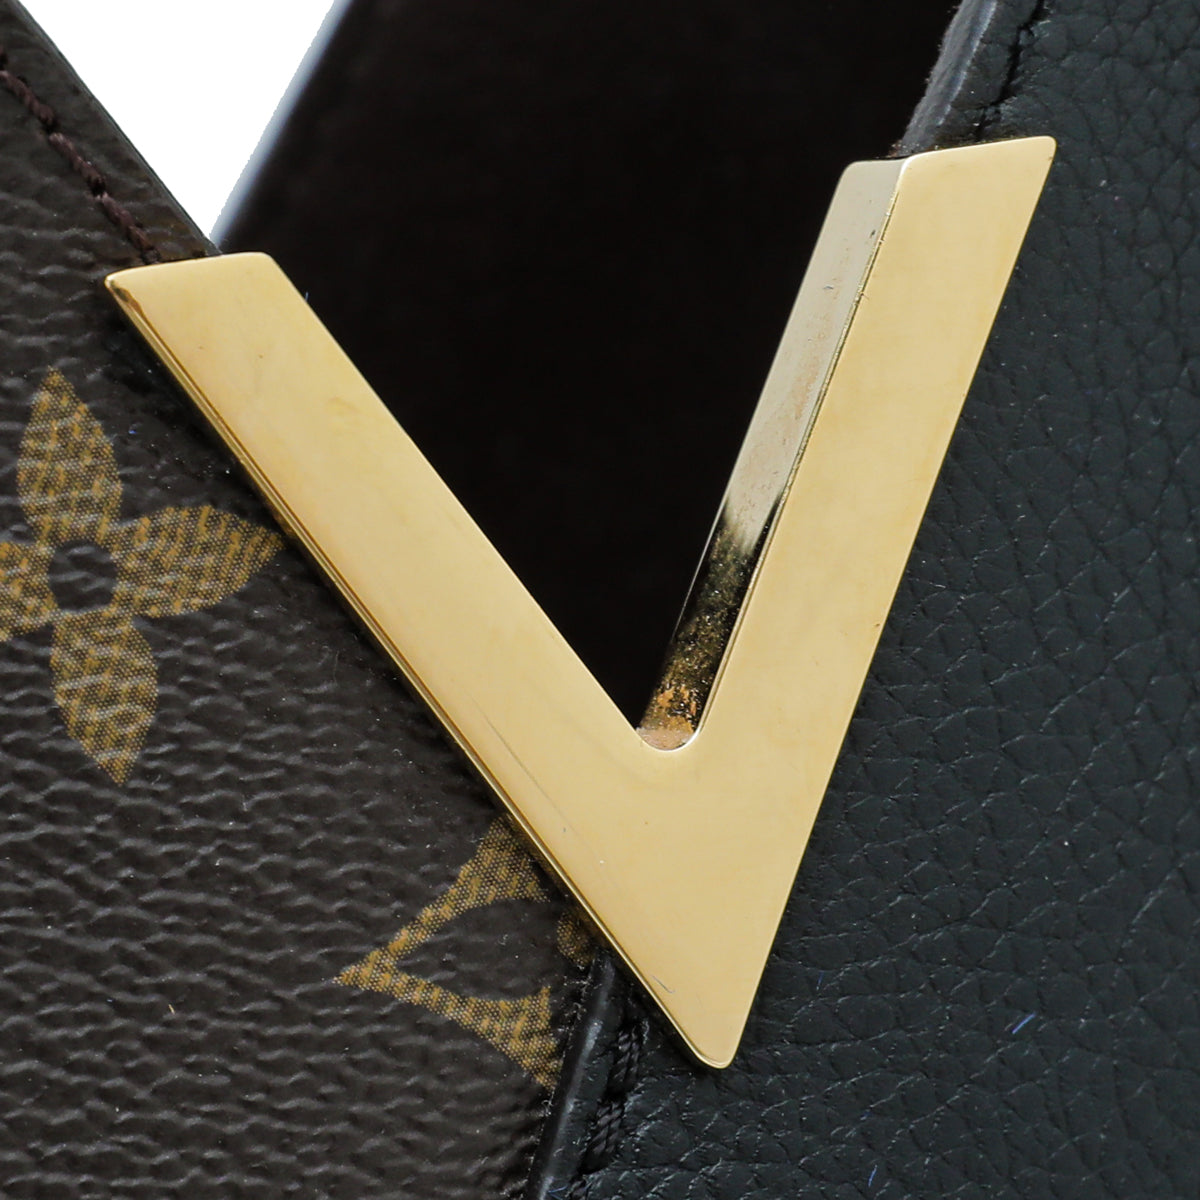 Louis Vuitton Monogram Black Kimono Tote PM Bag – The Closet